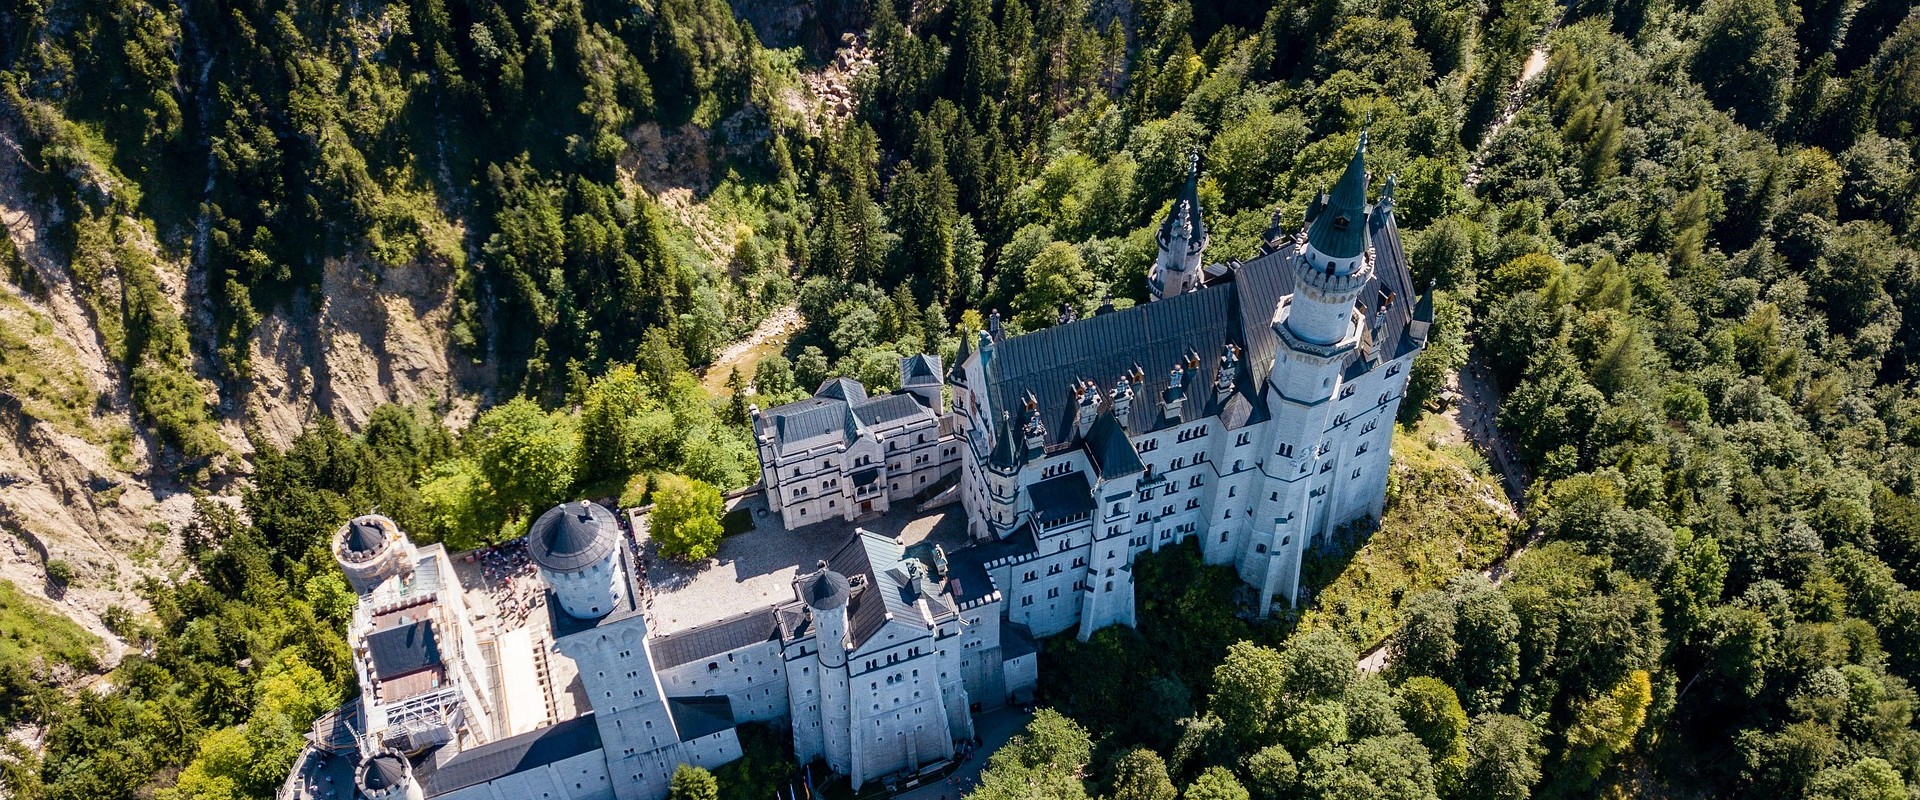 Tirol és a Bajor kastélyok